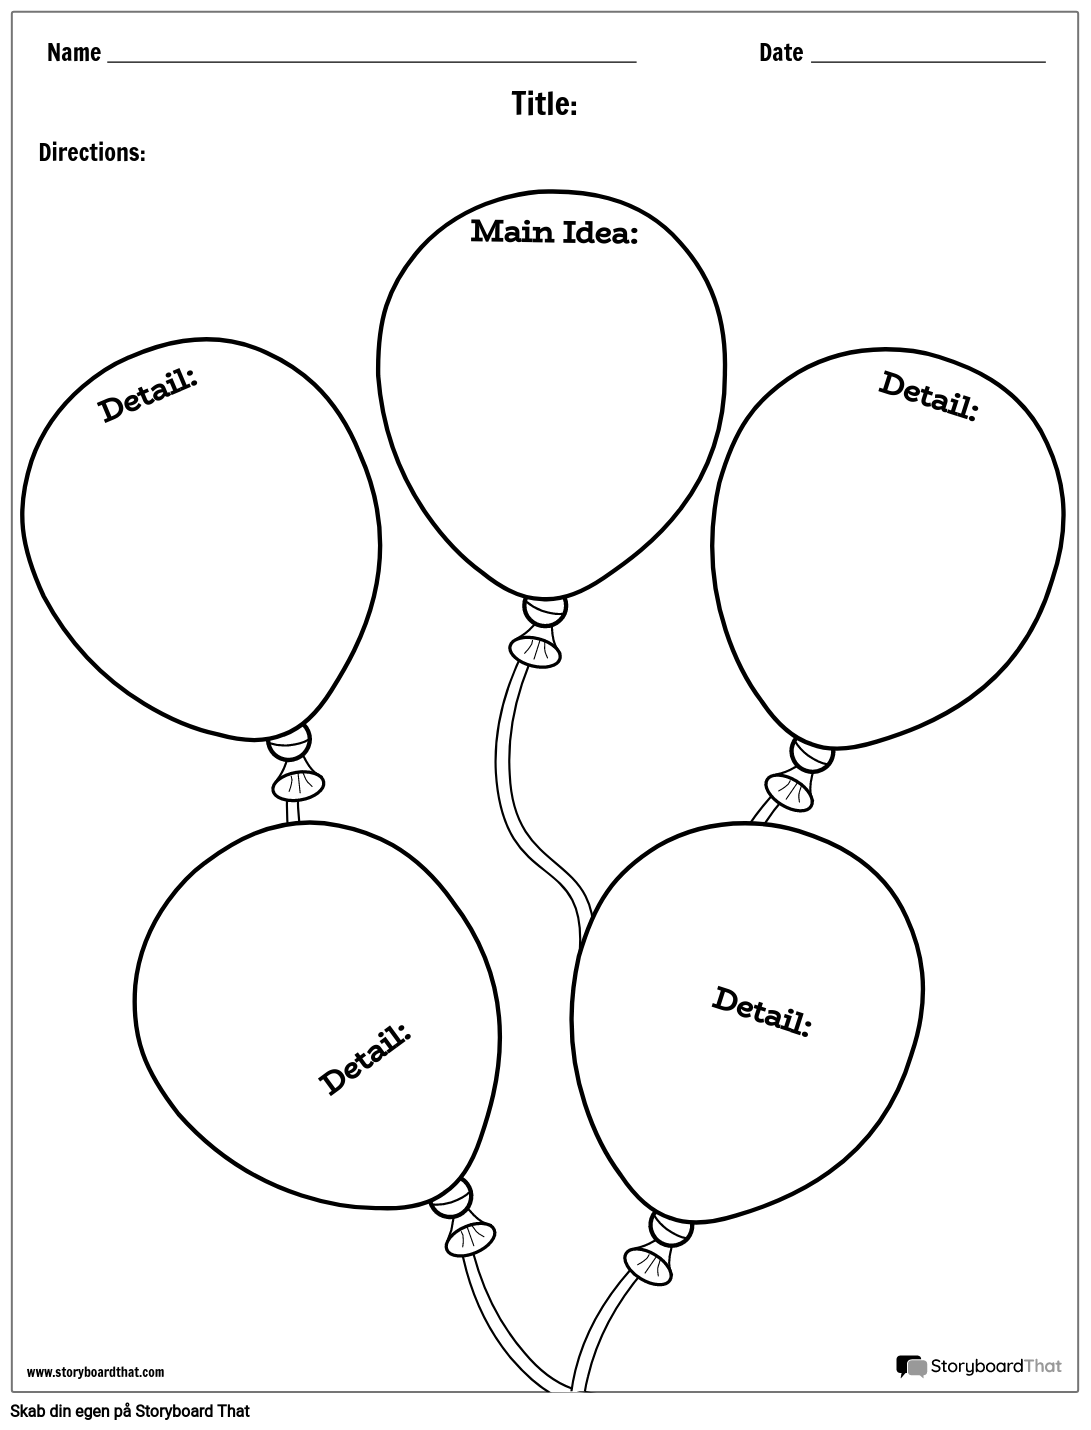 Ballonhistorie Kort Tomt